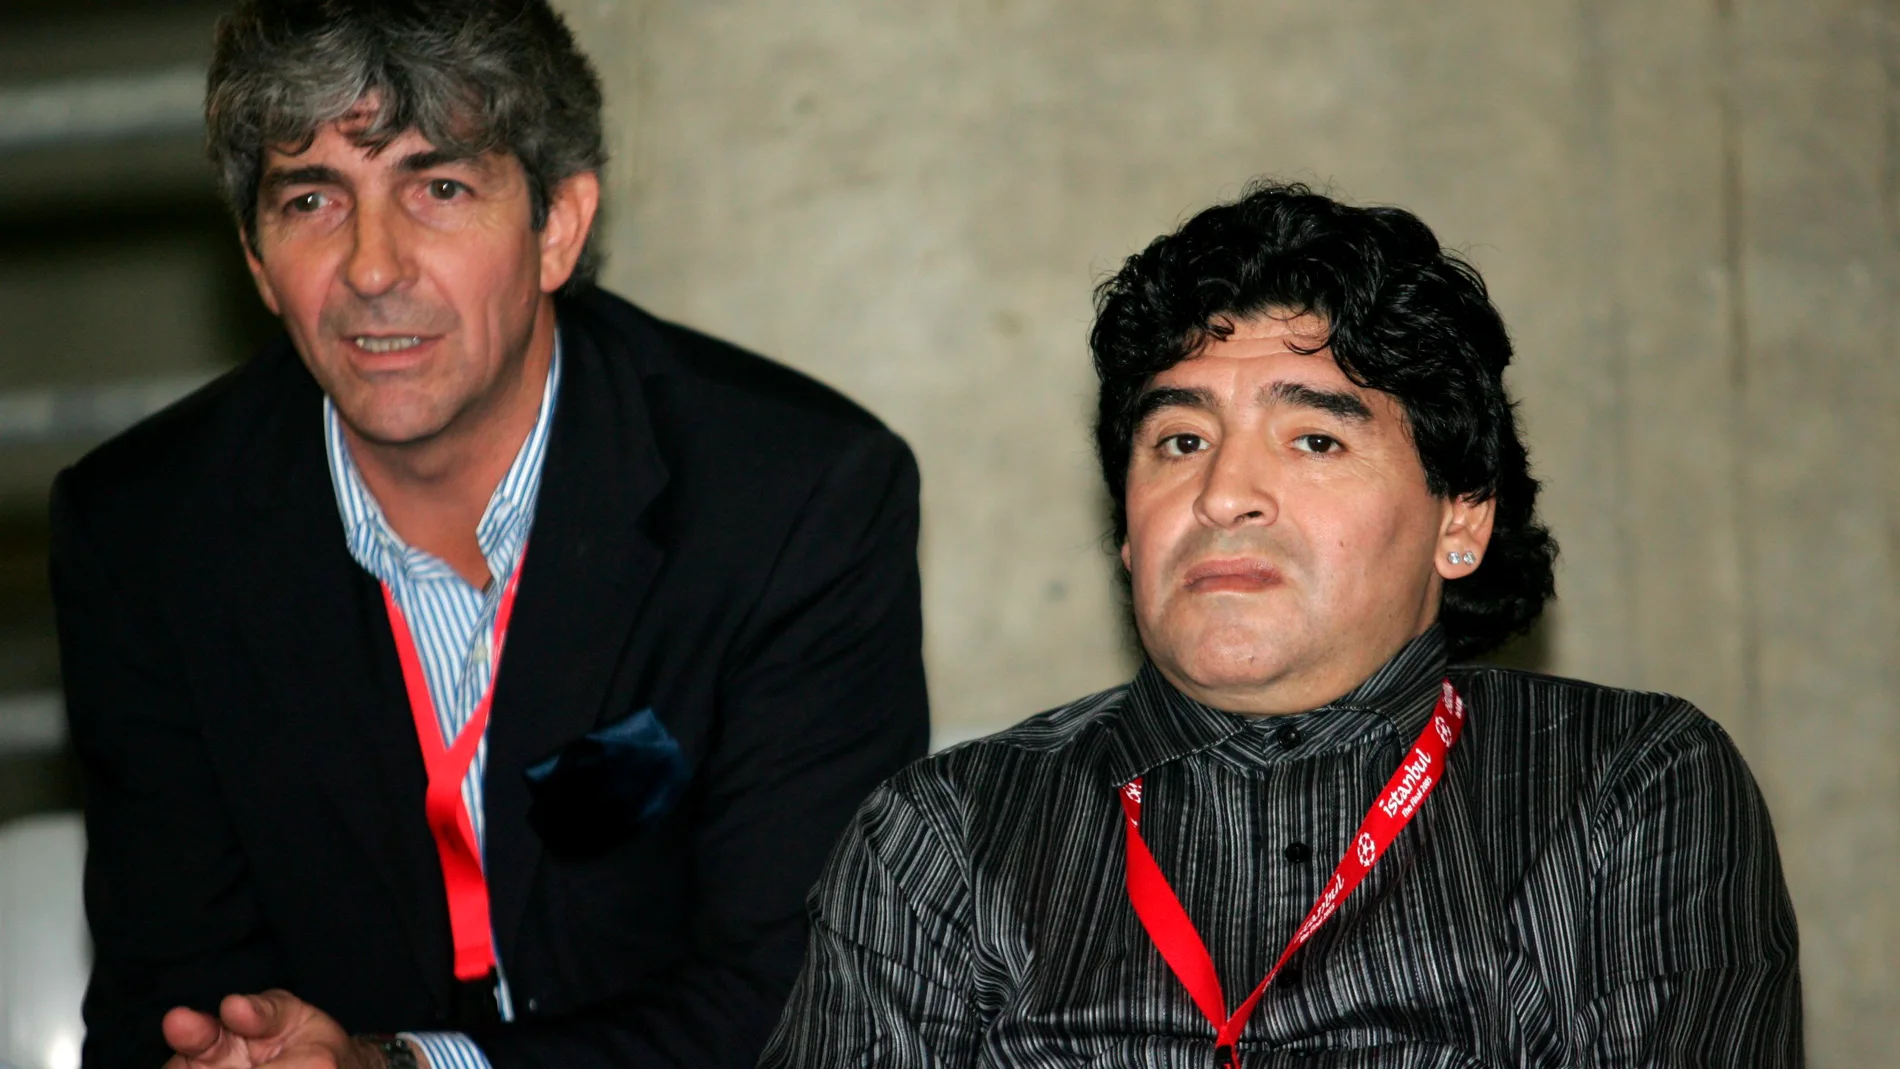 Paolo Rossi y Maradona, dos mitos del fútbol que nos han dejado